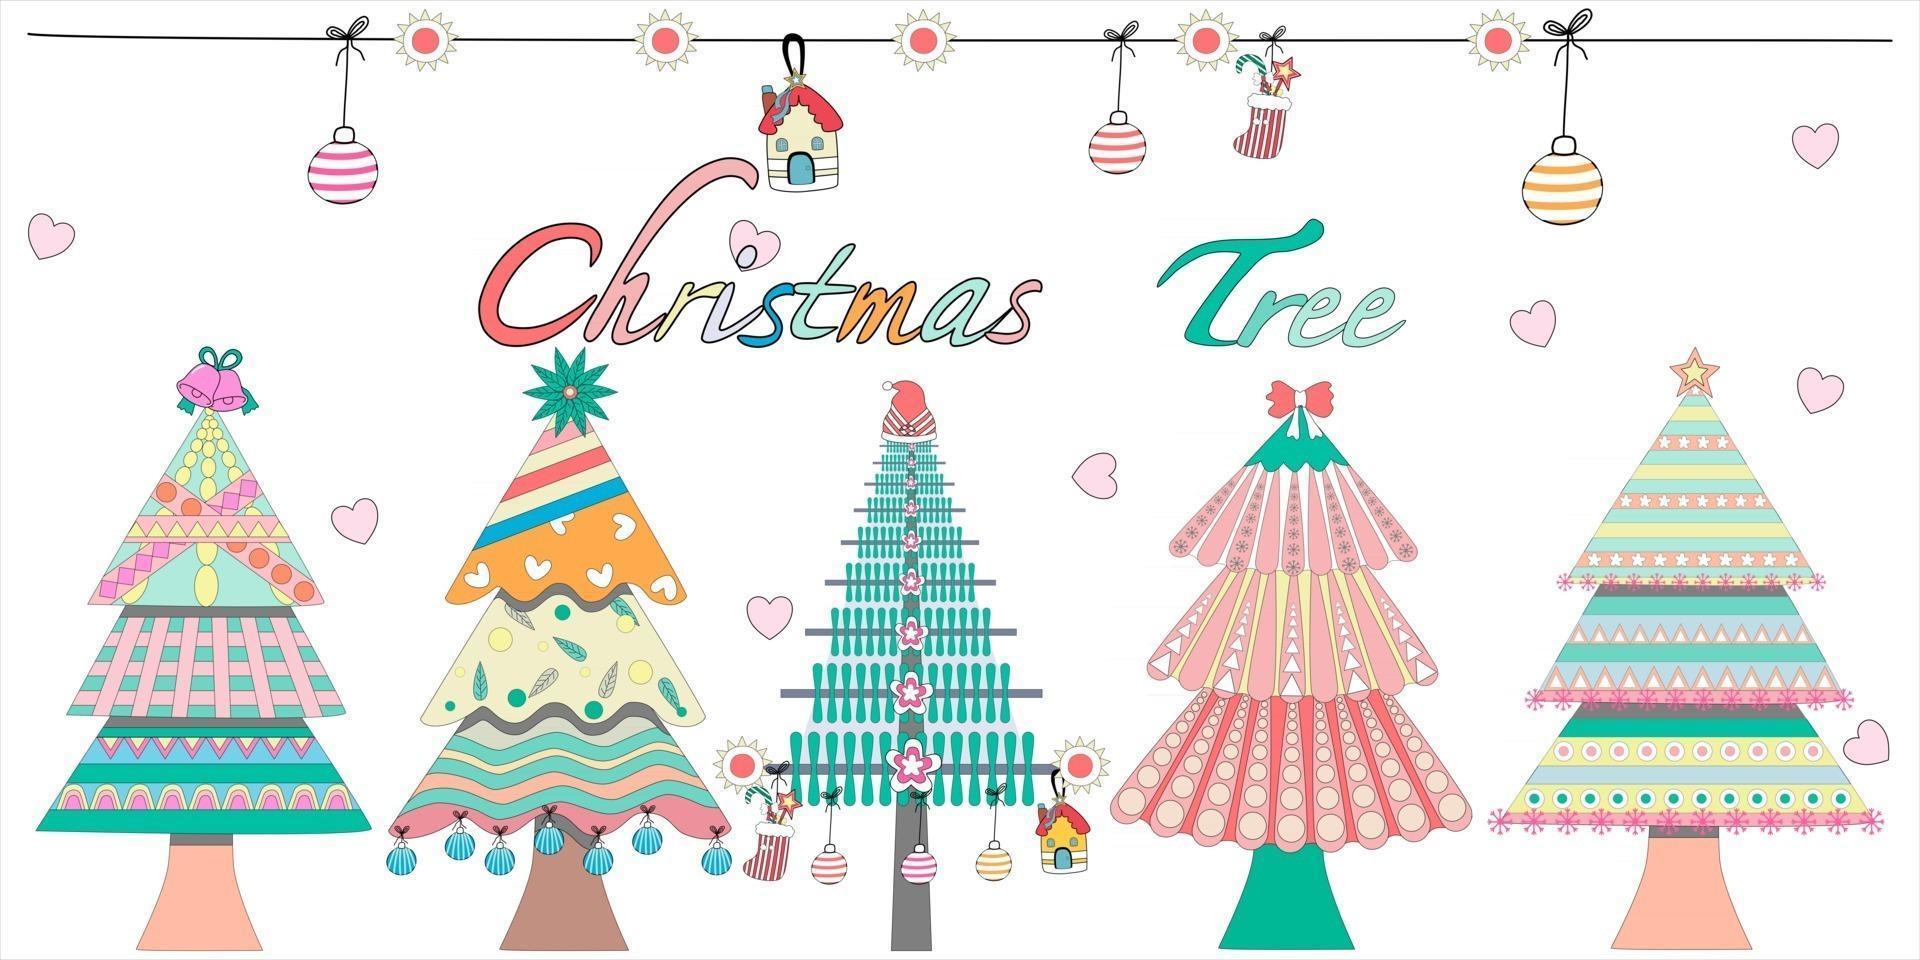 süßes weihnachtsbaumgekritzeldesign in pastelltönen vektor